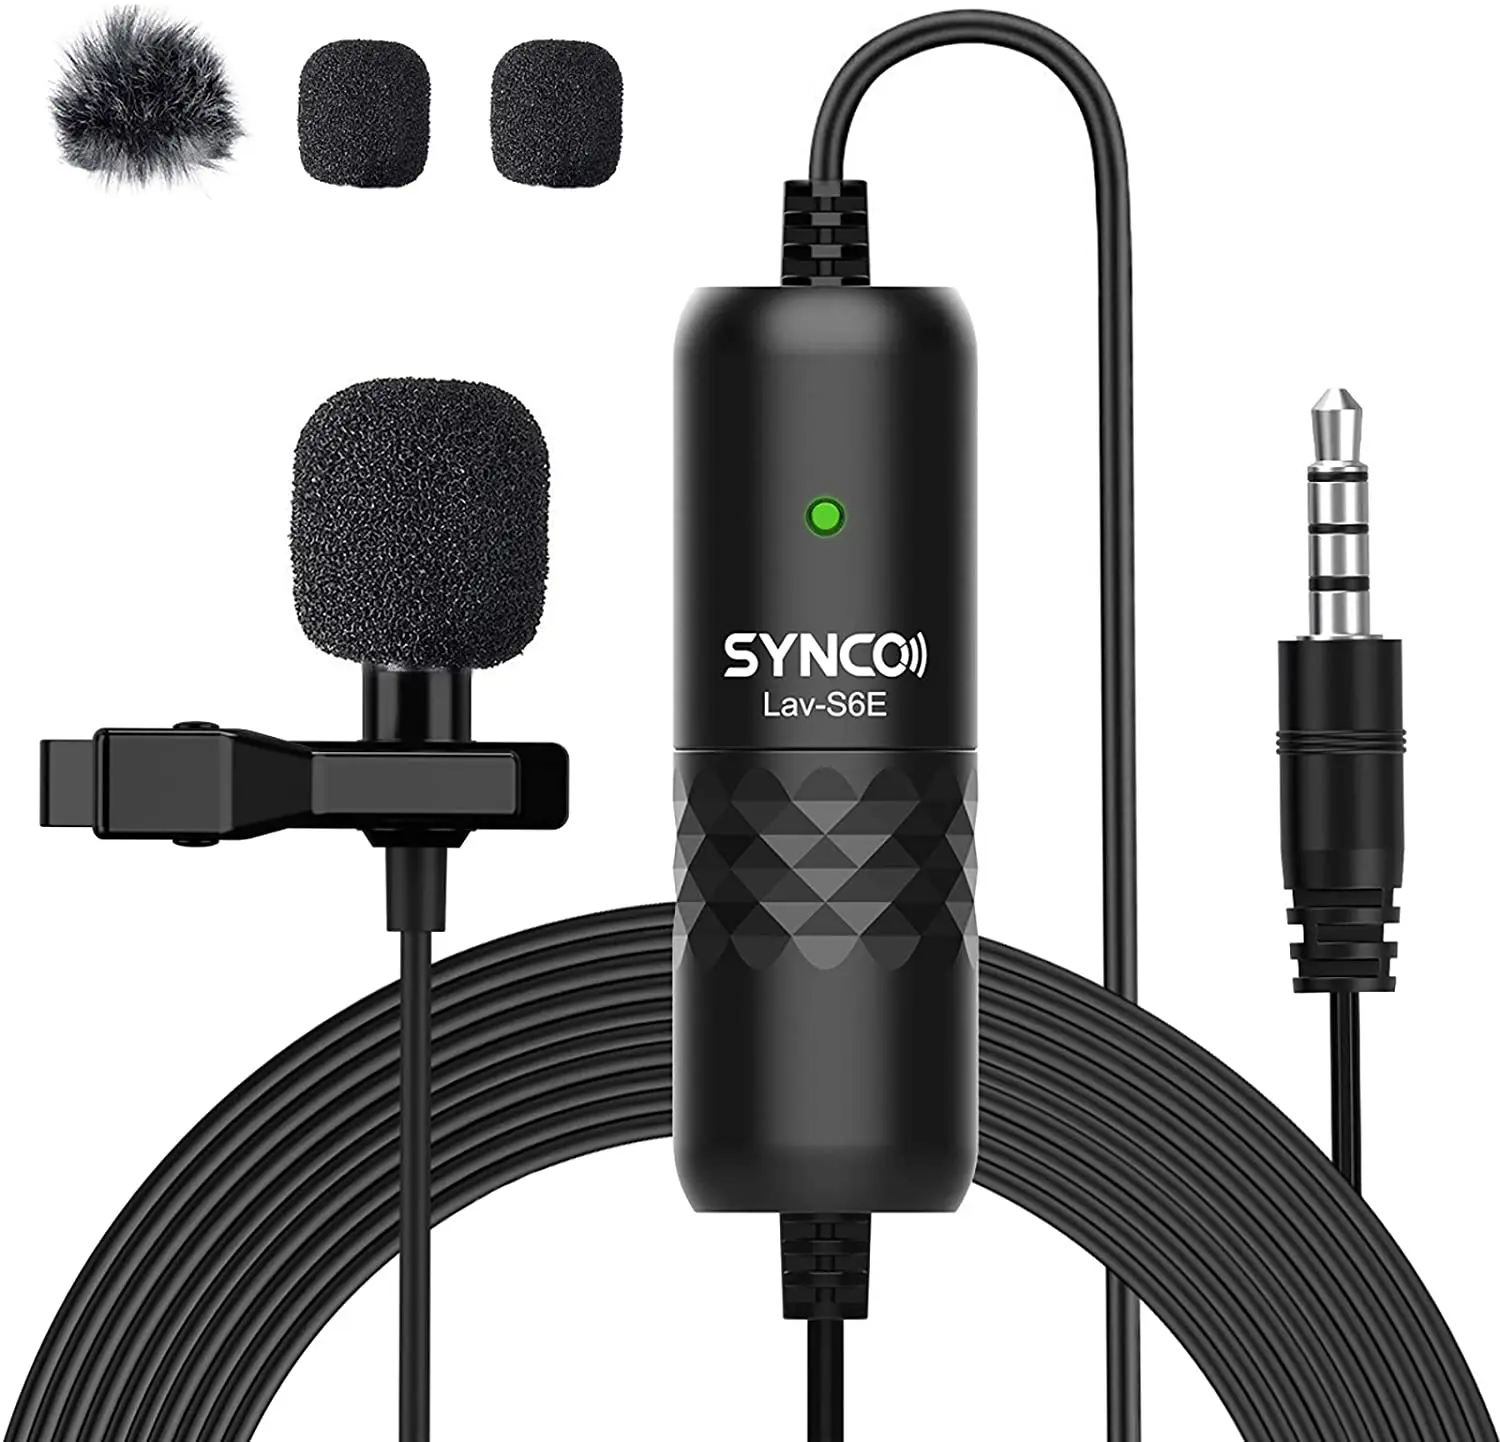 

Всенаправленный конденсаторный микрофон SYNCO Lav S6E, кабель 6 м, камера для смартфона, для трансляции, интервью, записи на YouTube